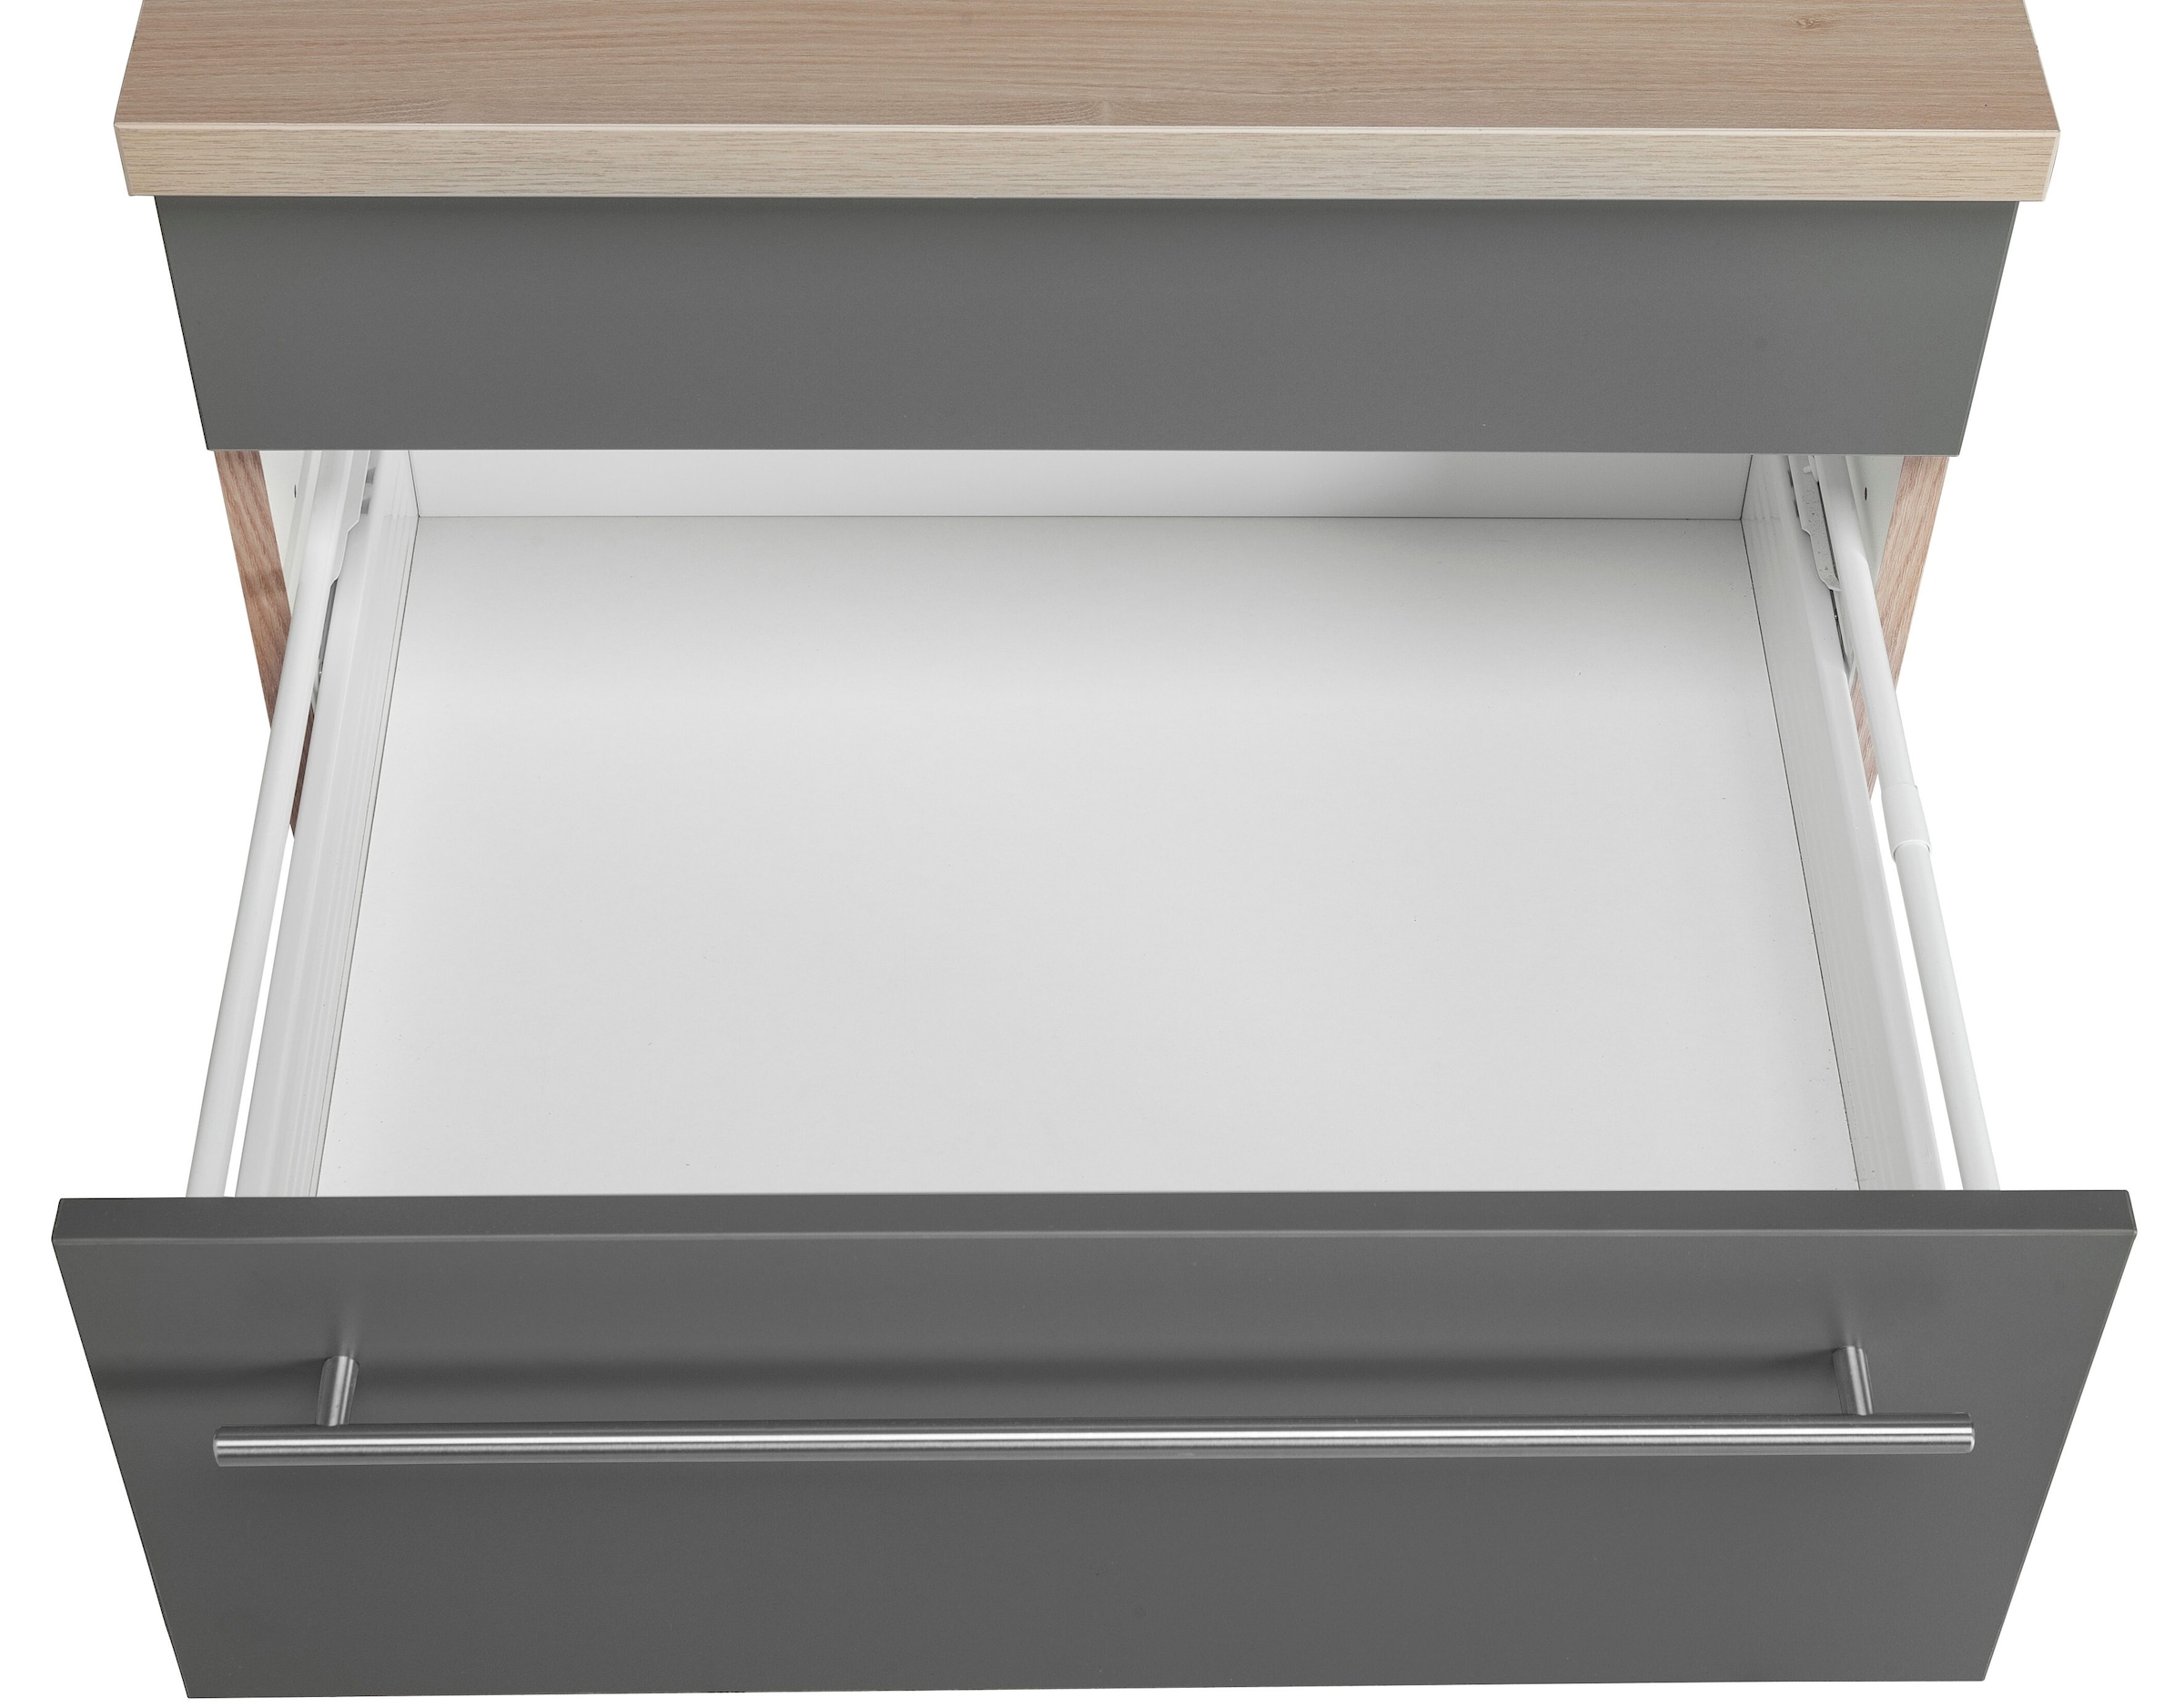 OPTIFIT Küche »Bern«, Breite 240 cm, ohne E-Geräte, Stärke der  Arbeitsplatte wählbar günstig kaufen